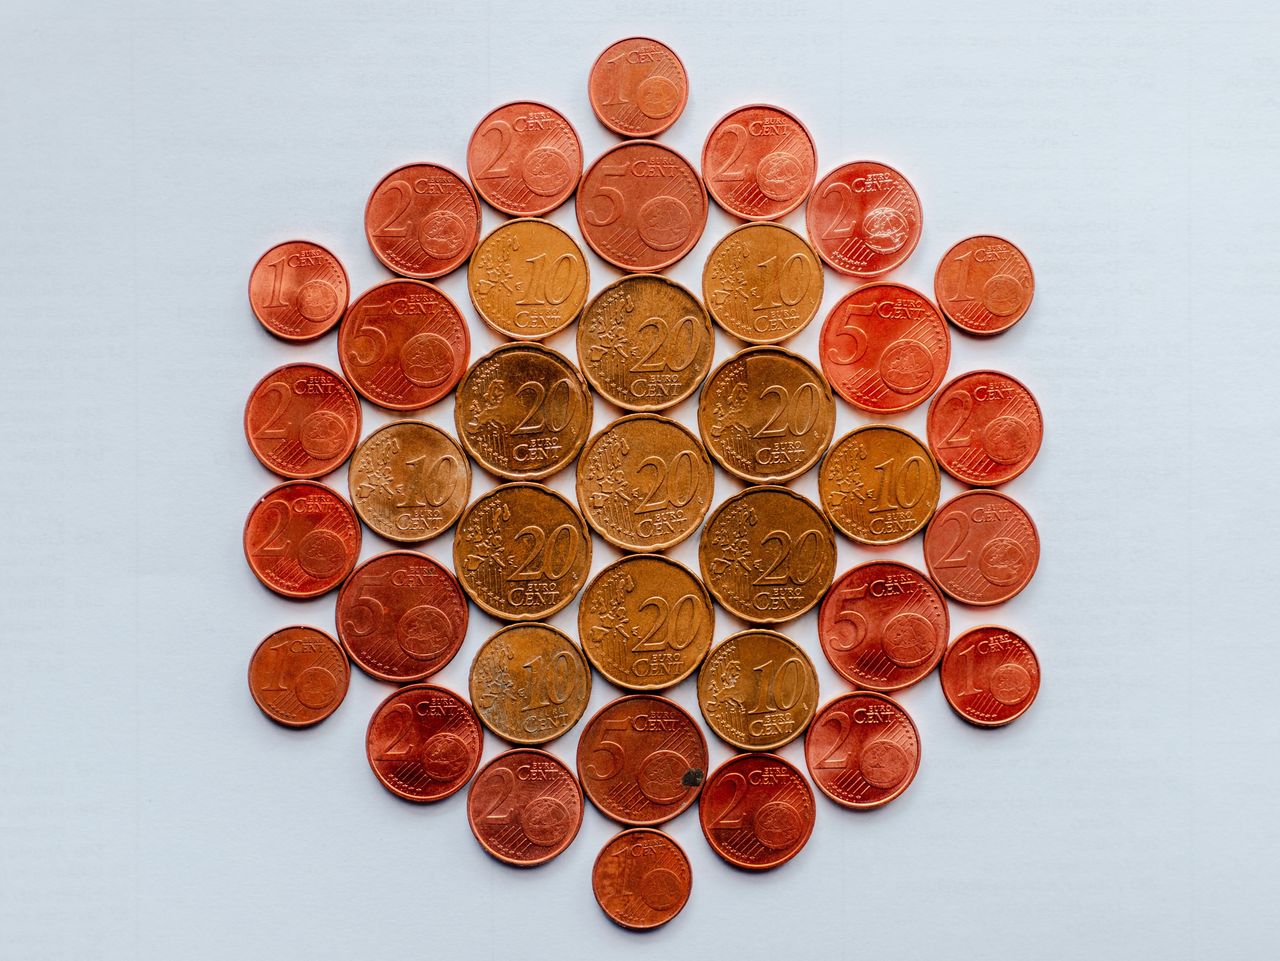 Centmünzen liegen in einem Kreis verteilt